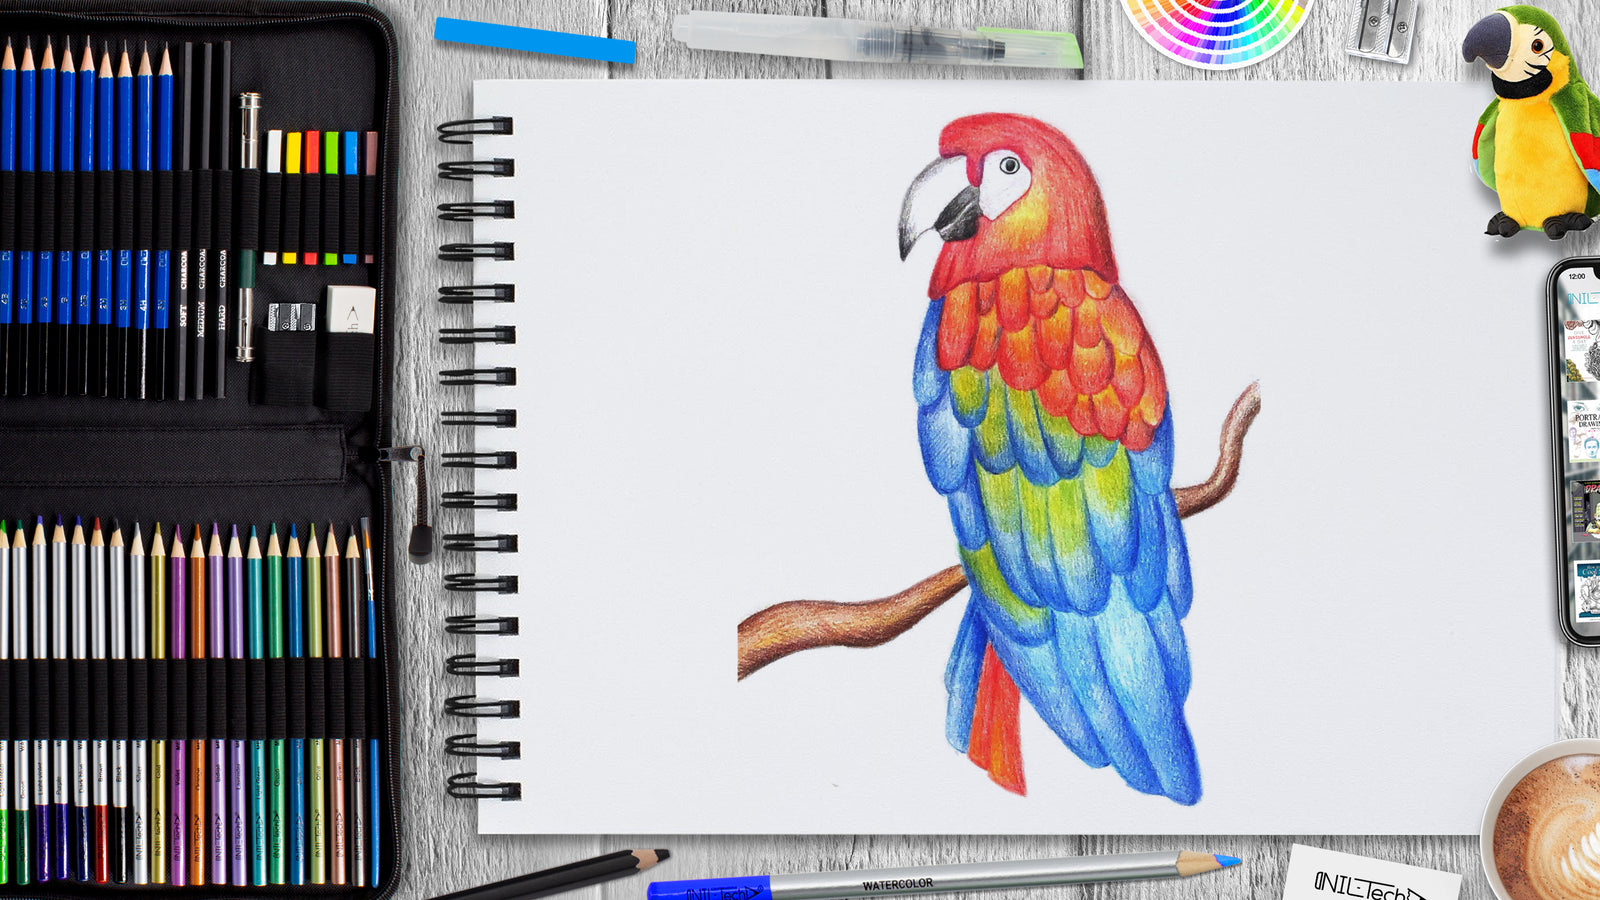 Parrot Pencil drawing by Karen Elaine Evans | Artfinder